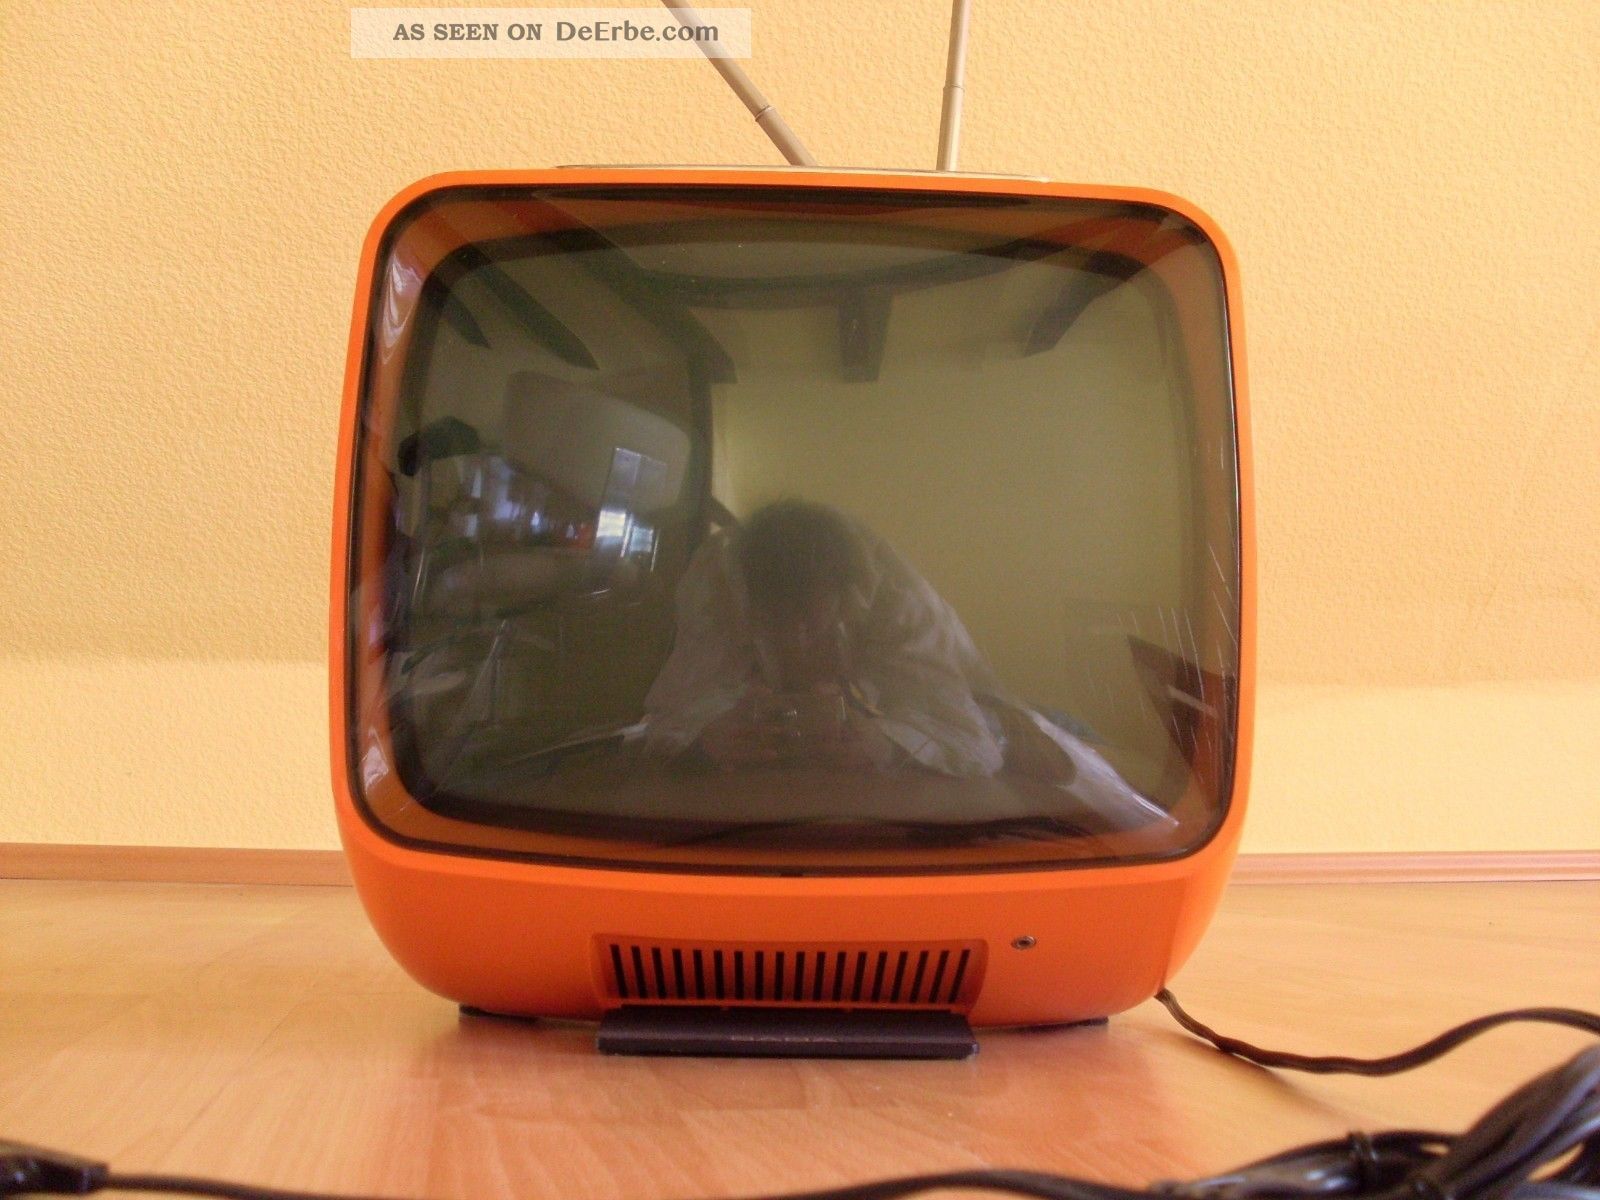 Saba 60er 70er Design Tv Panton Ära Space Age Rot Orange Wie Klappzahlenwecker 1970-1979 Bild